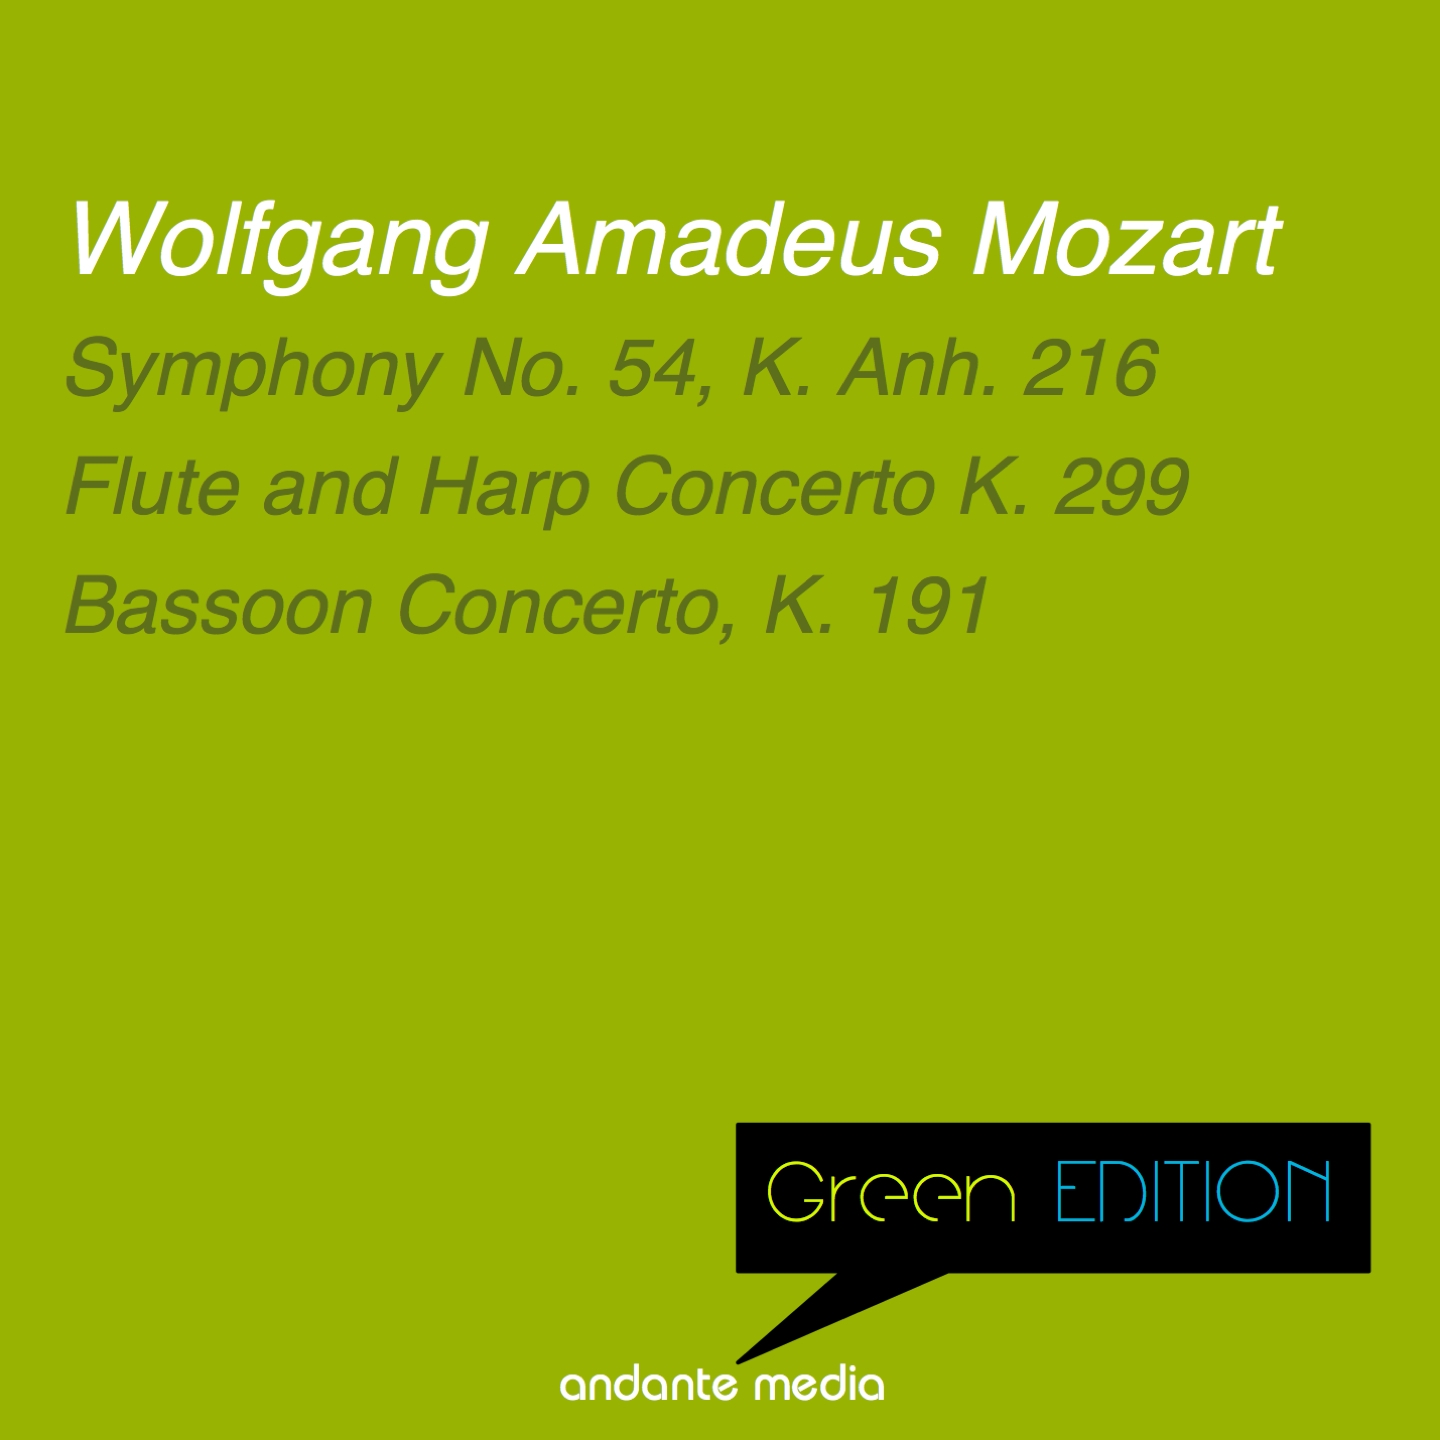 Flute and Harp Concerto in C Major, K. 299: III. Rondeau. Allegro